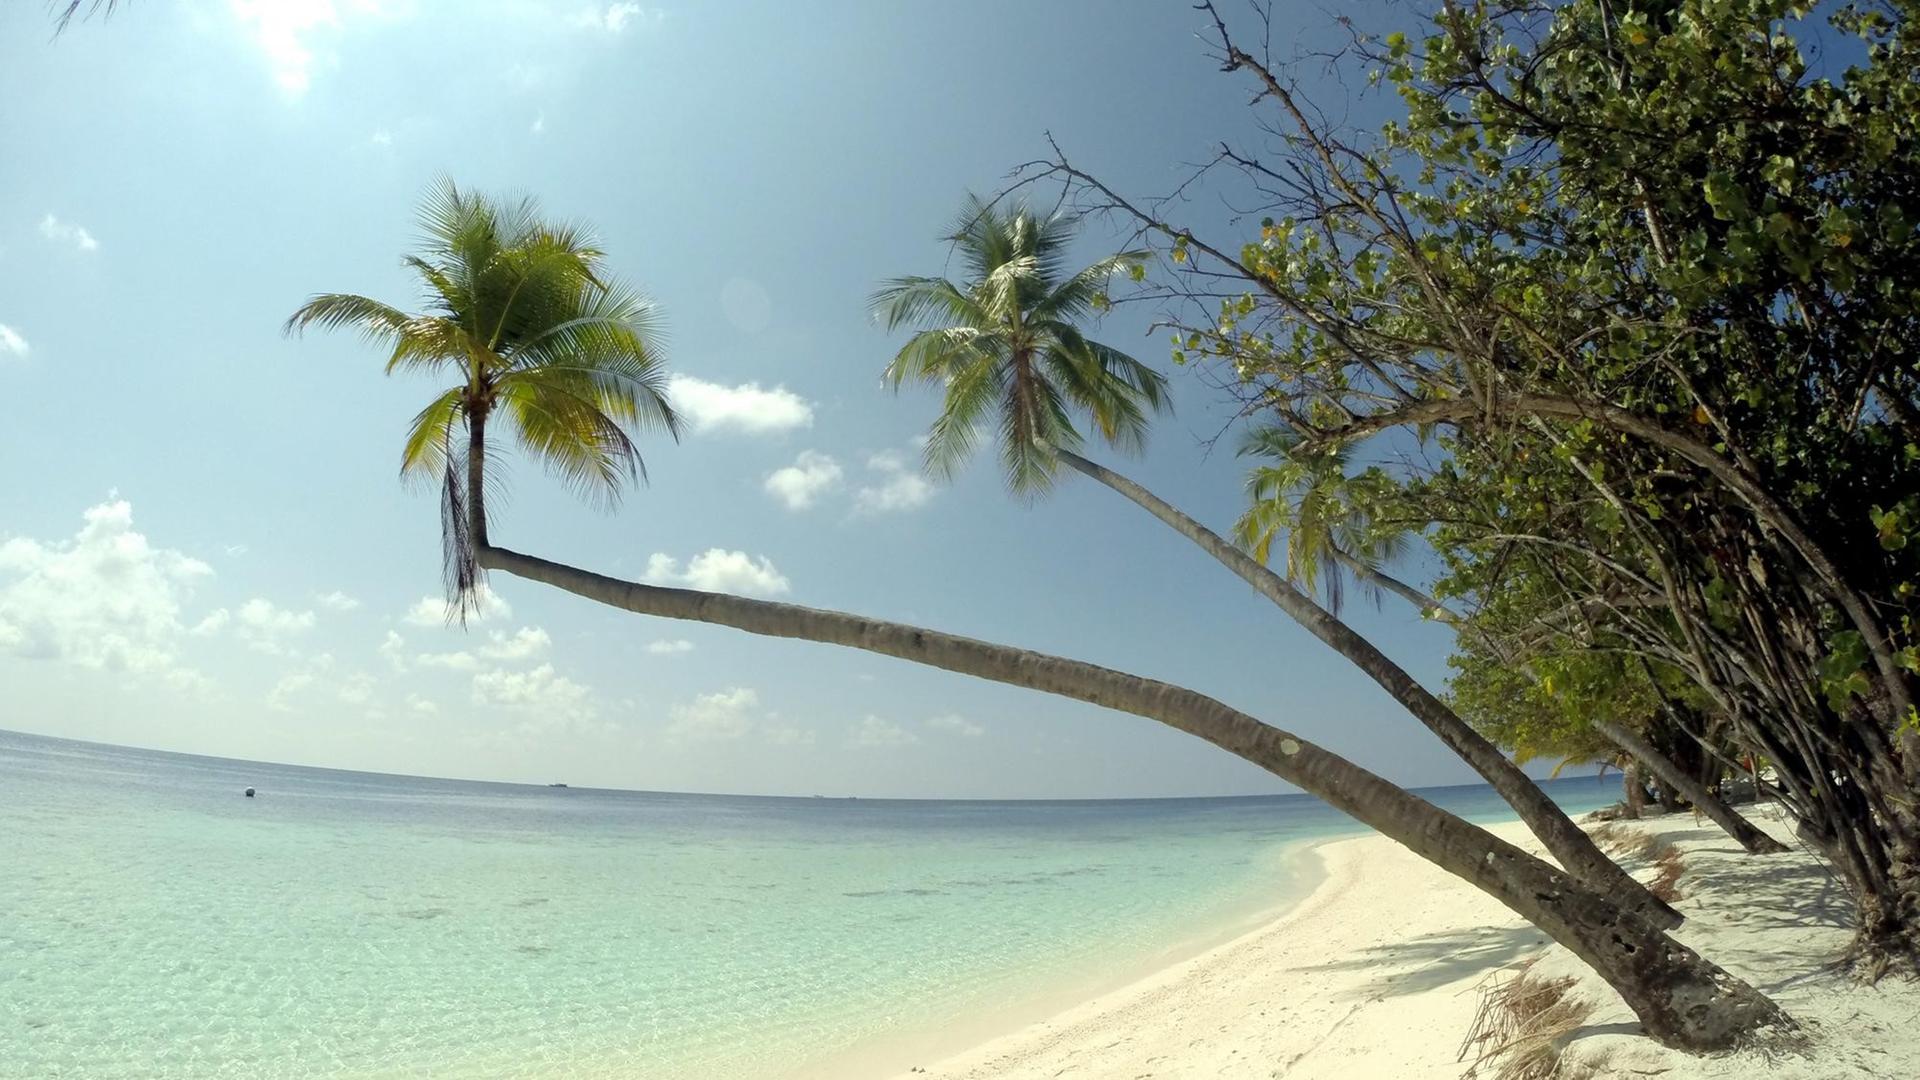 Palmenstrand auf einer Urlaubsinsel der Malediven des Ari Atolls, aufgenommen am 18.04.2014. Der Inselstaat Malediven liegt im indischen Ozean und besteht aus mehreren Atollen und mehr als 1.100 Inseln.